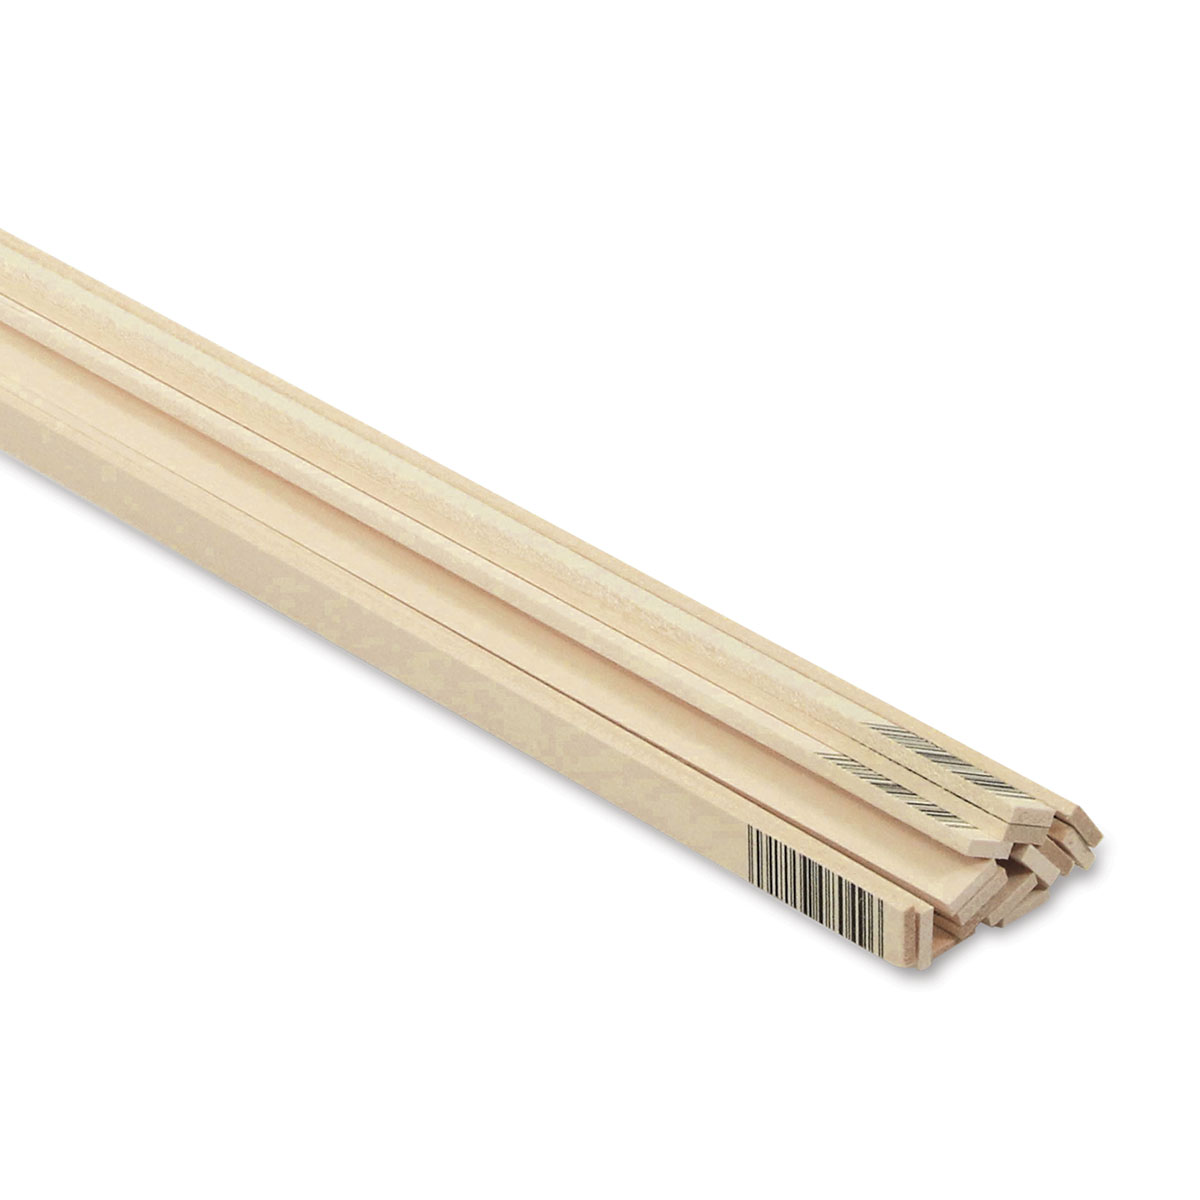 1/16 x 1/8 x 48 Basswood Sticks